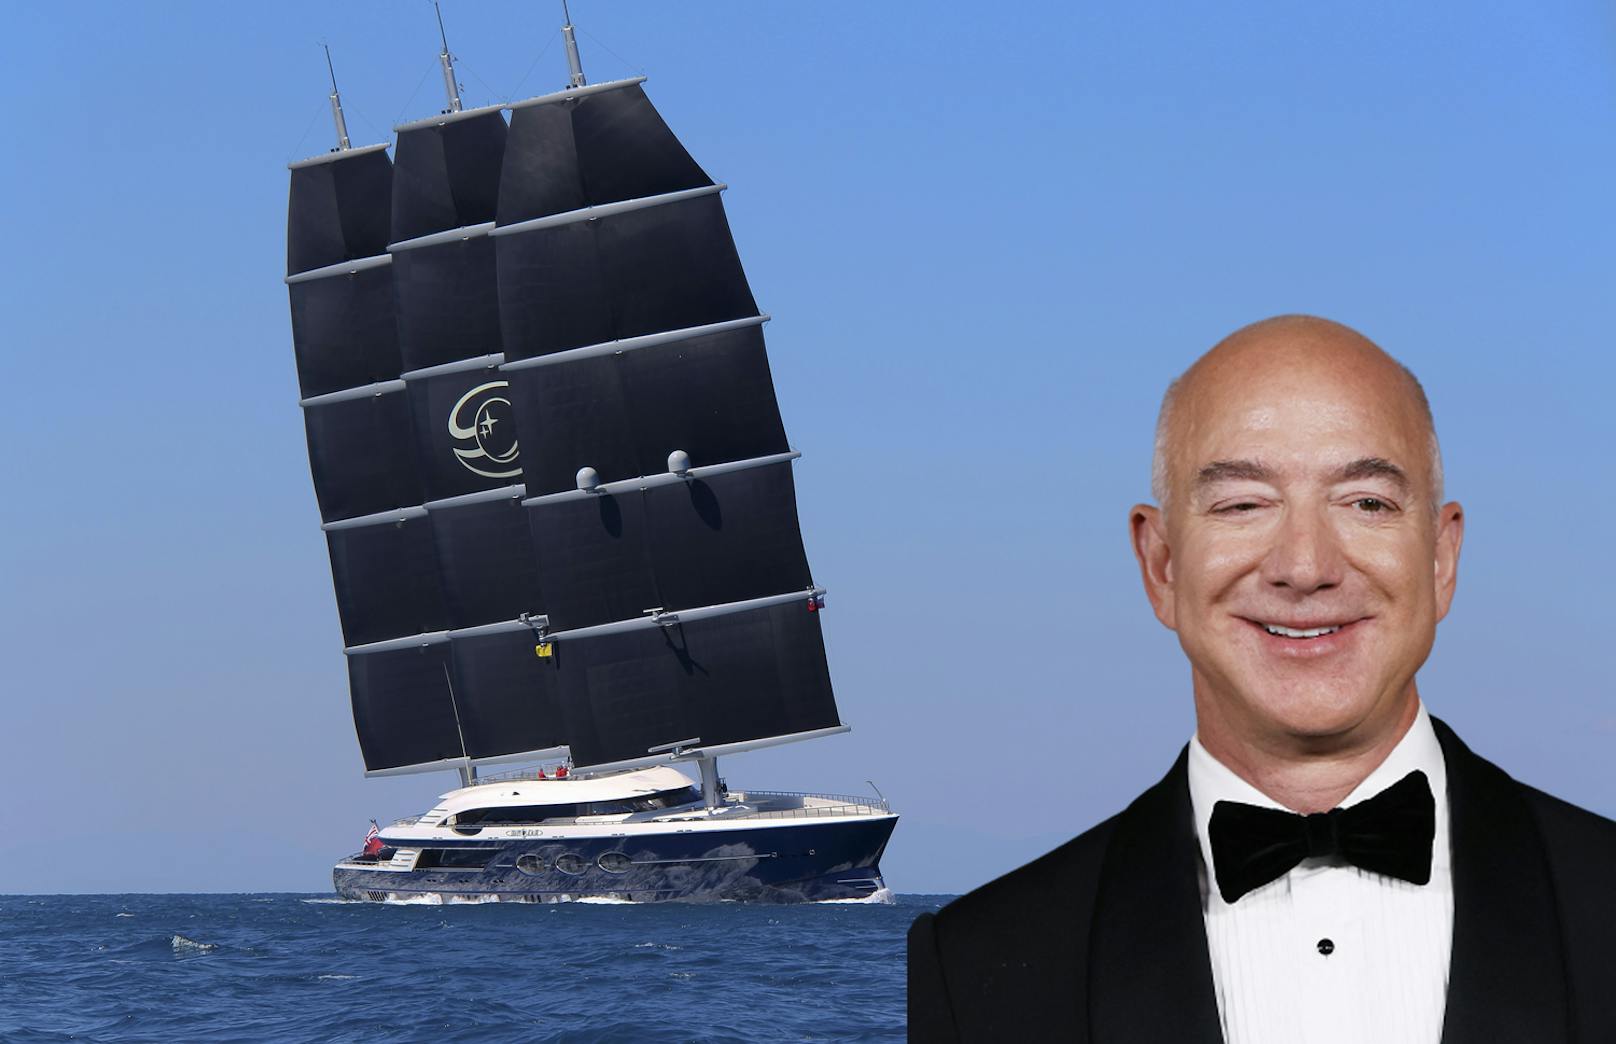 Jeff Bezos freut sich auf seine neue Superyacht. Dafür lässt er sogar Brücken versetzen.